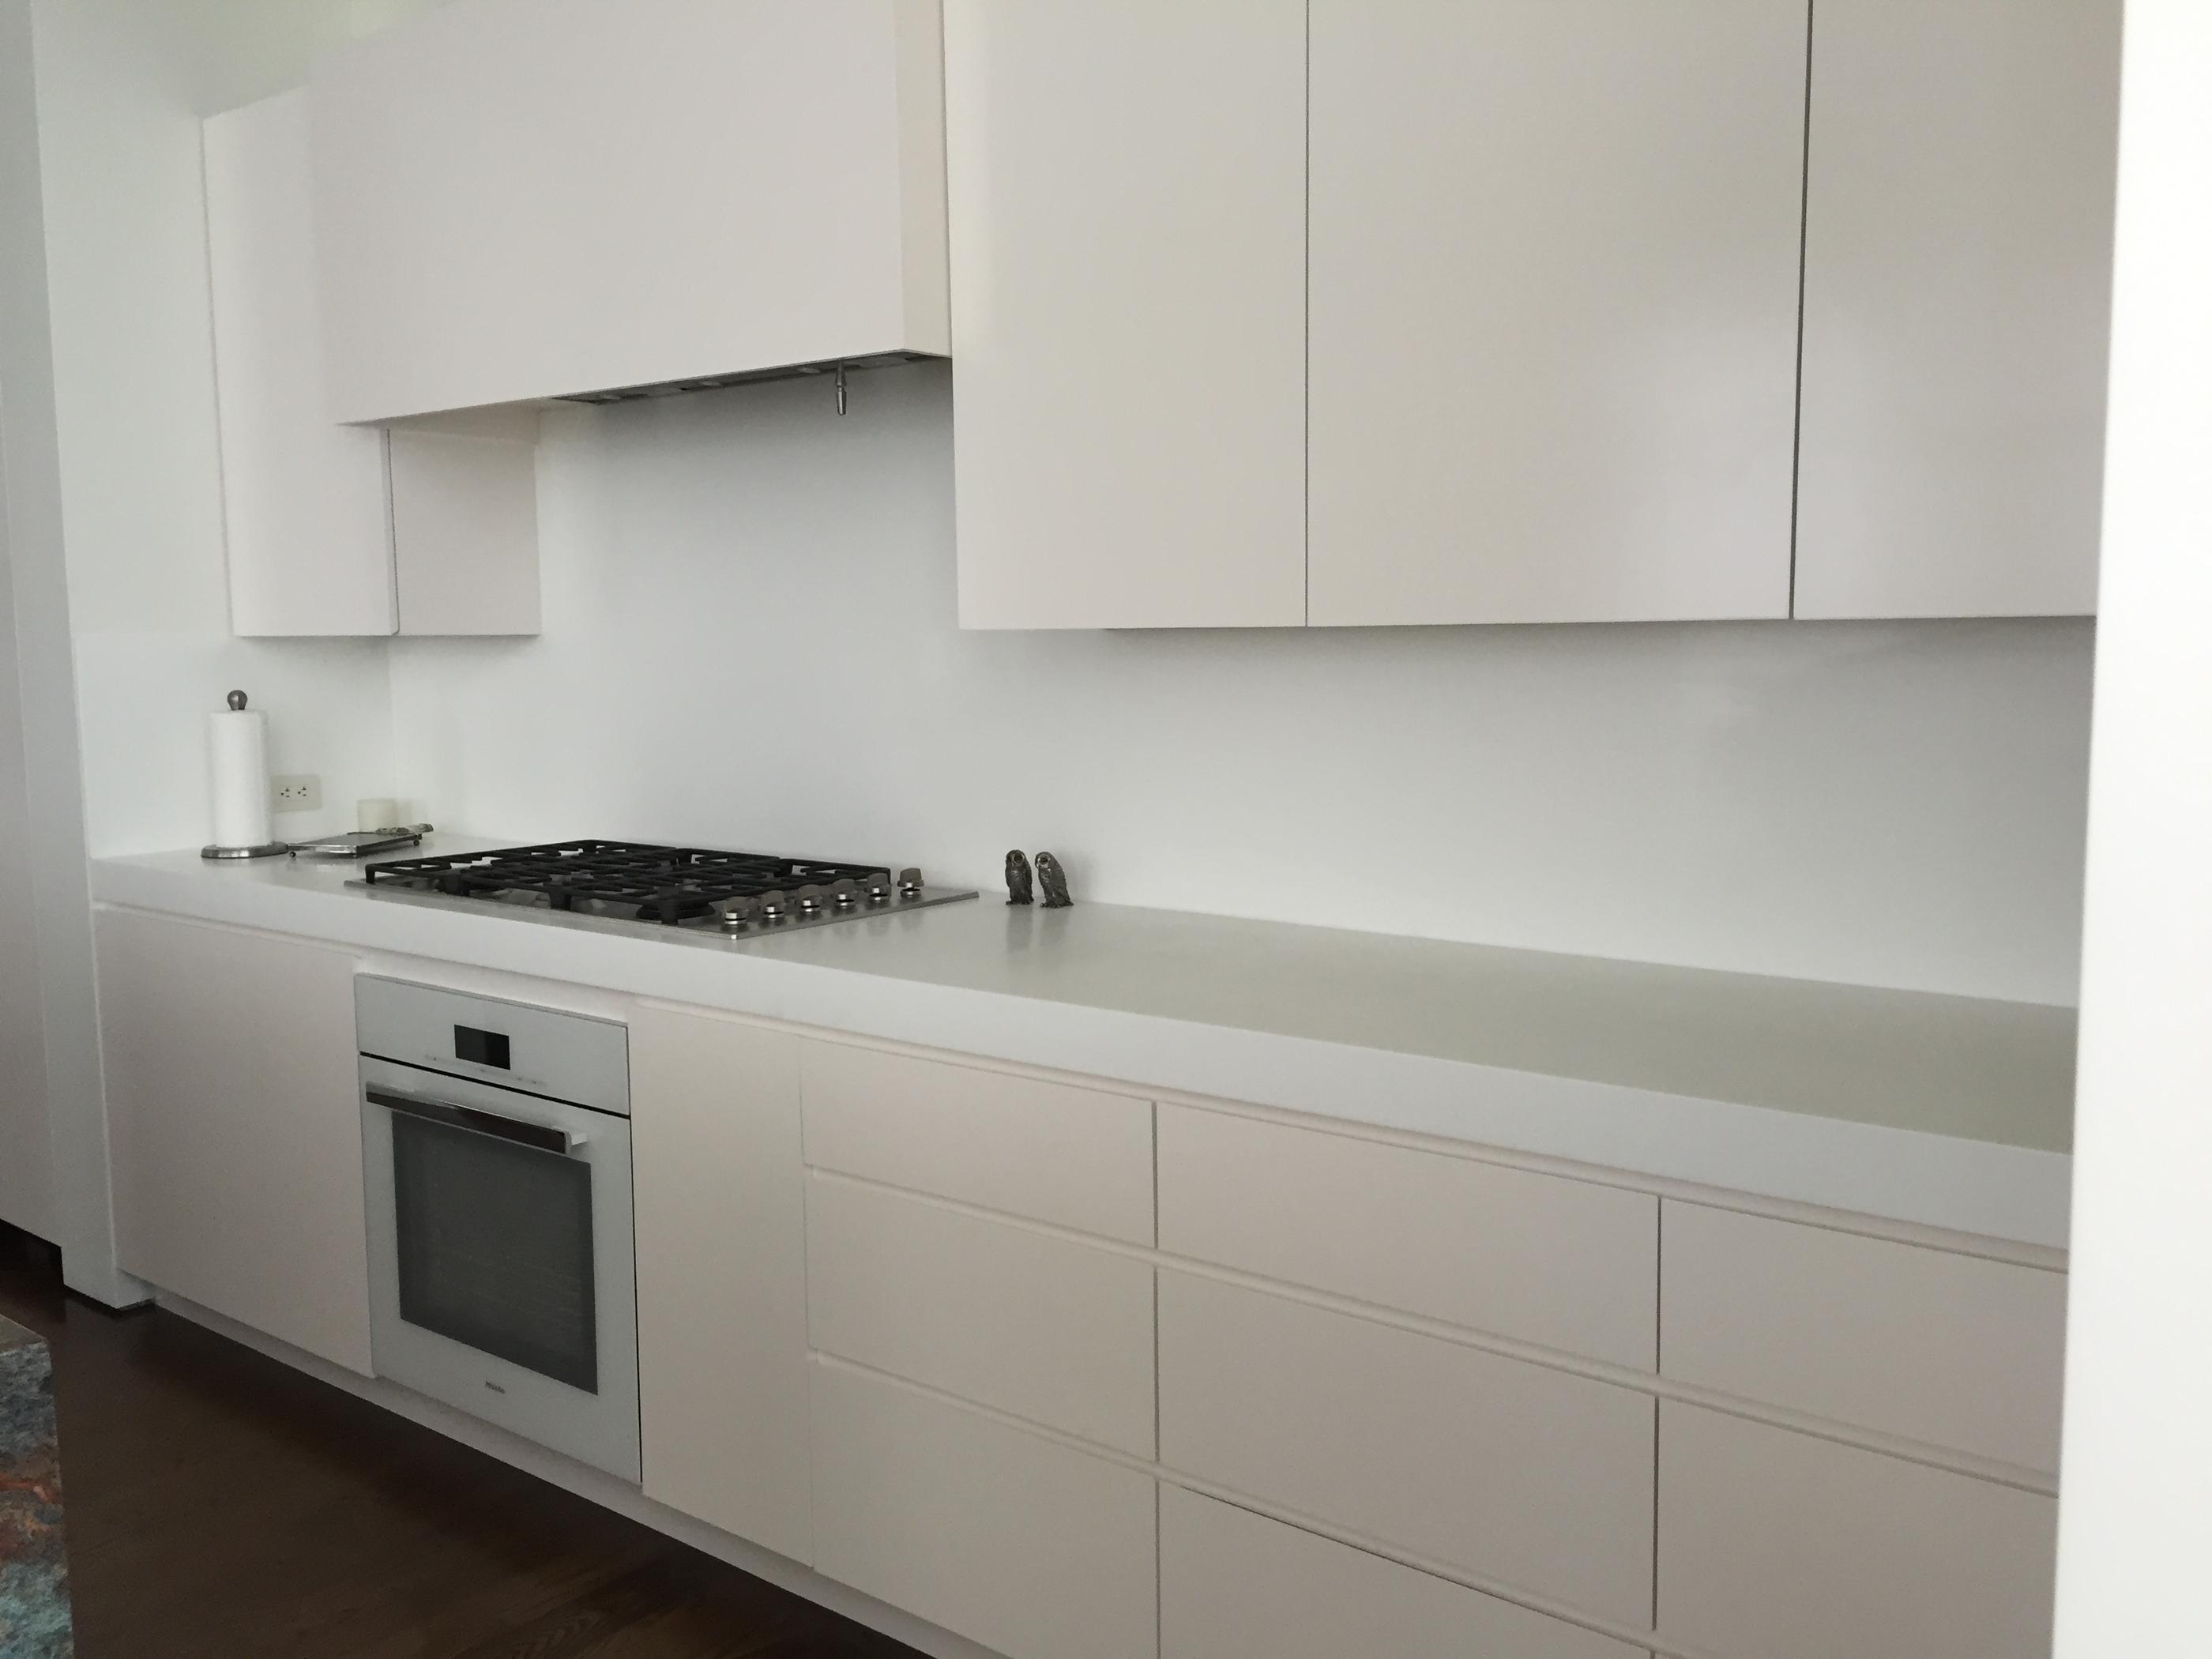 White kitchen countertops